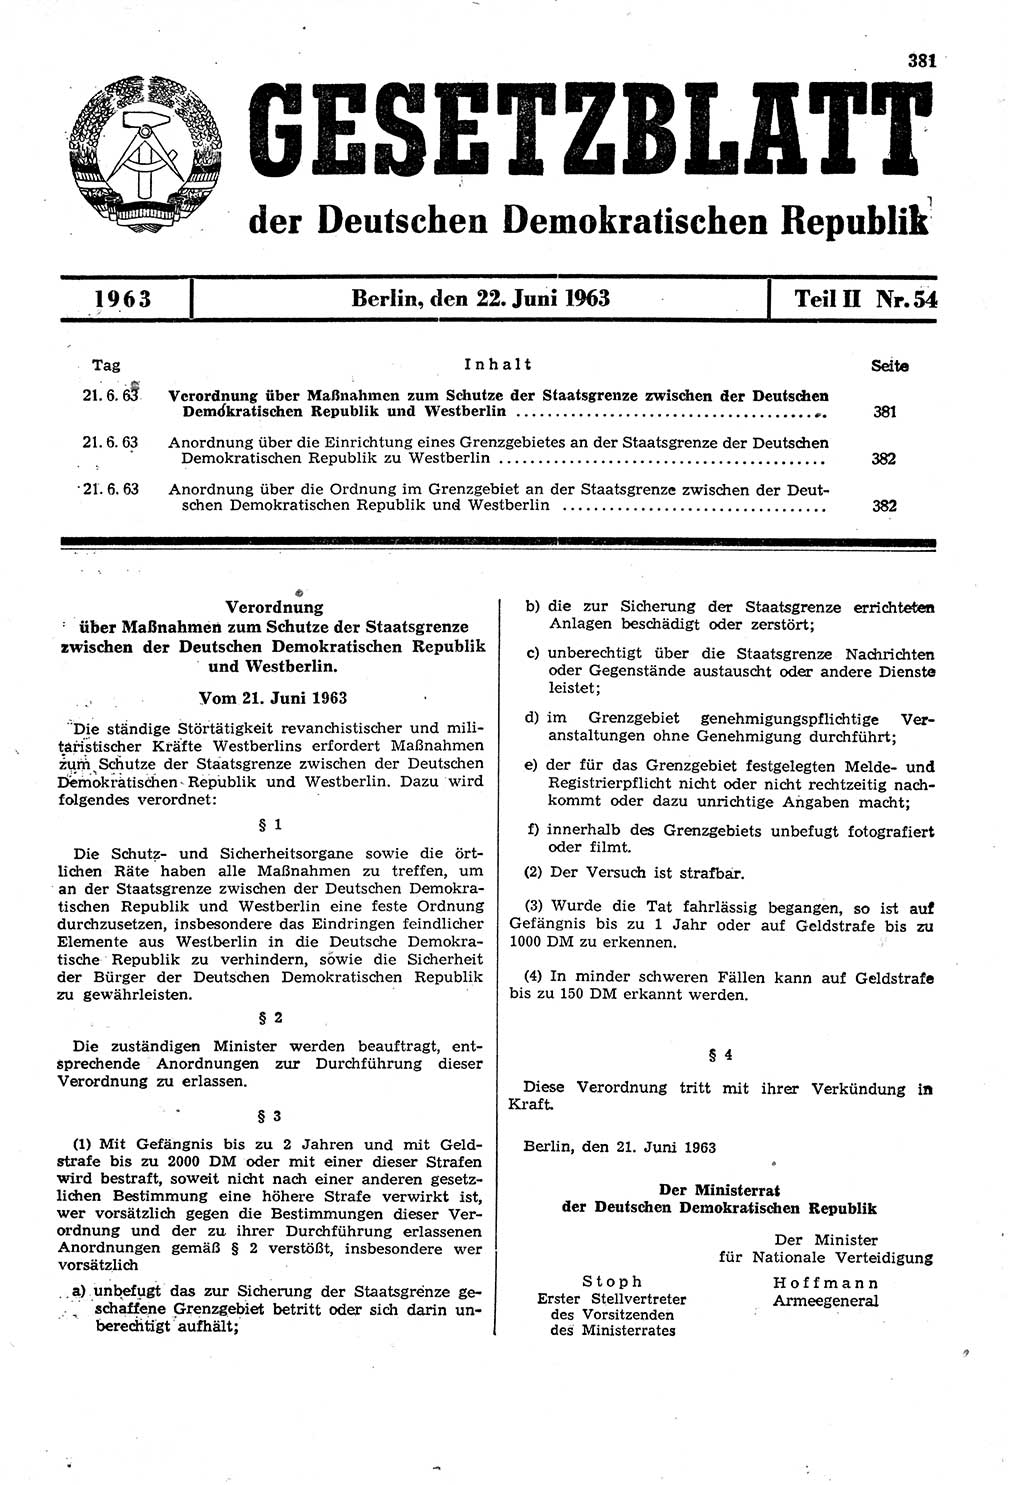 Gesetzblatt (GBl.) der Deutschen Demokratischen Republik (DDR) Teil ⅠⅠ 1963, Seite 381 (GBl. DDR ⅠⅠ 1963, S. 381)